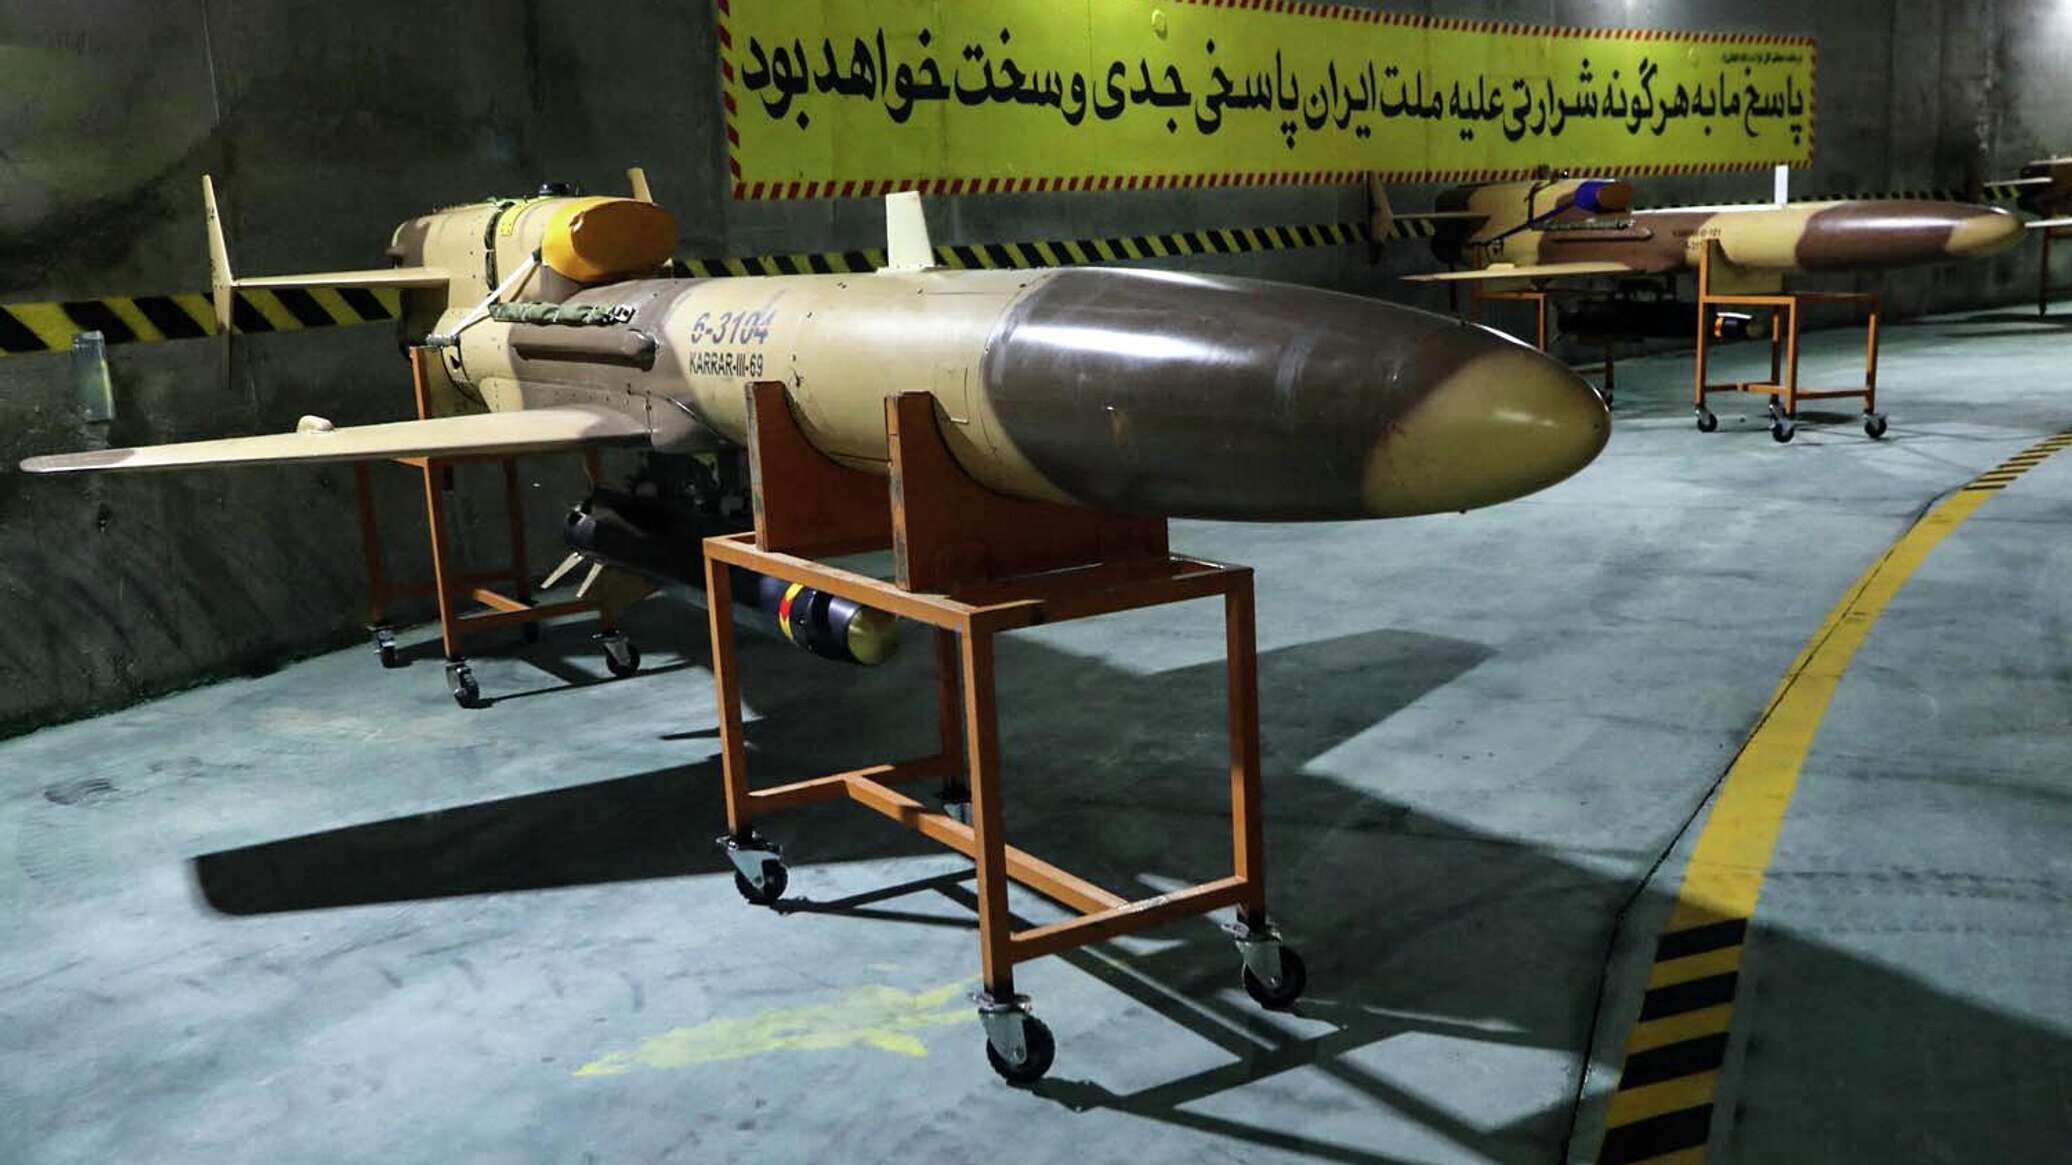 مسؤول إيراني: لدينا قدرات متميزة في إنتاج معدات عسكرية كنا نستوردها في الماضي